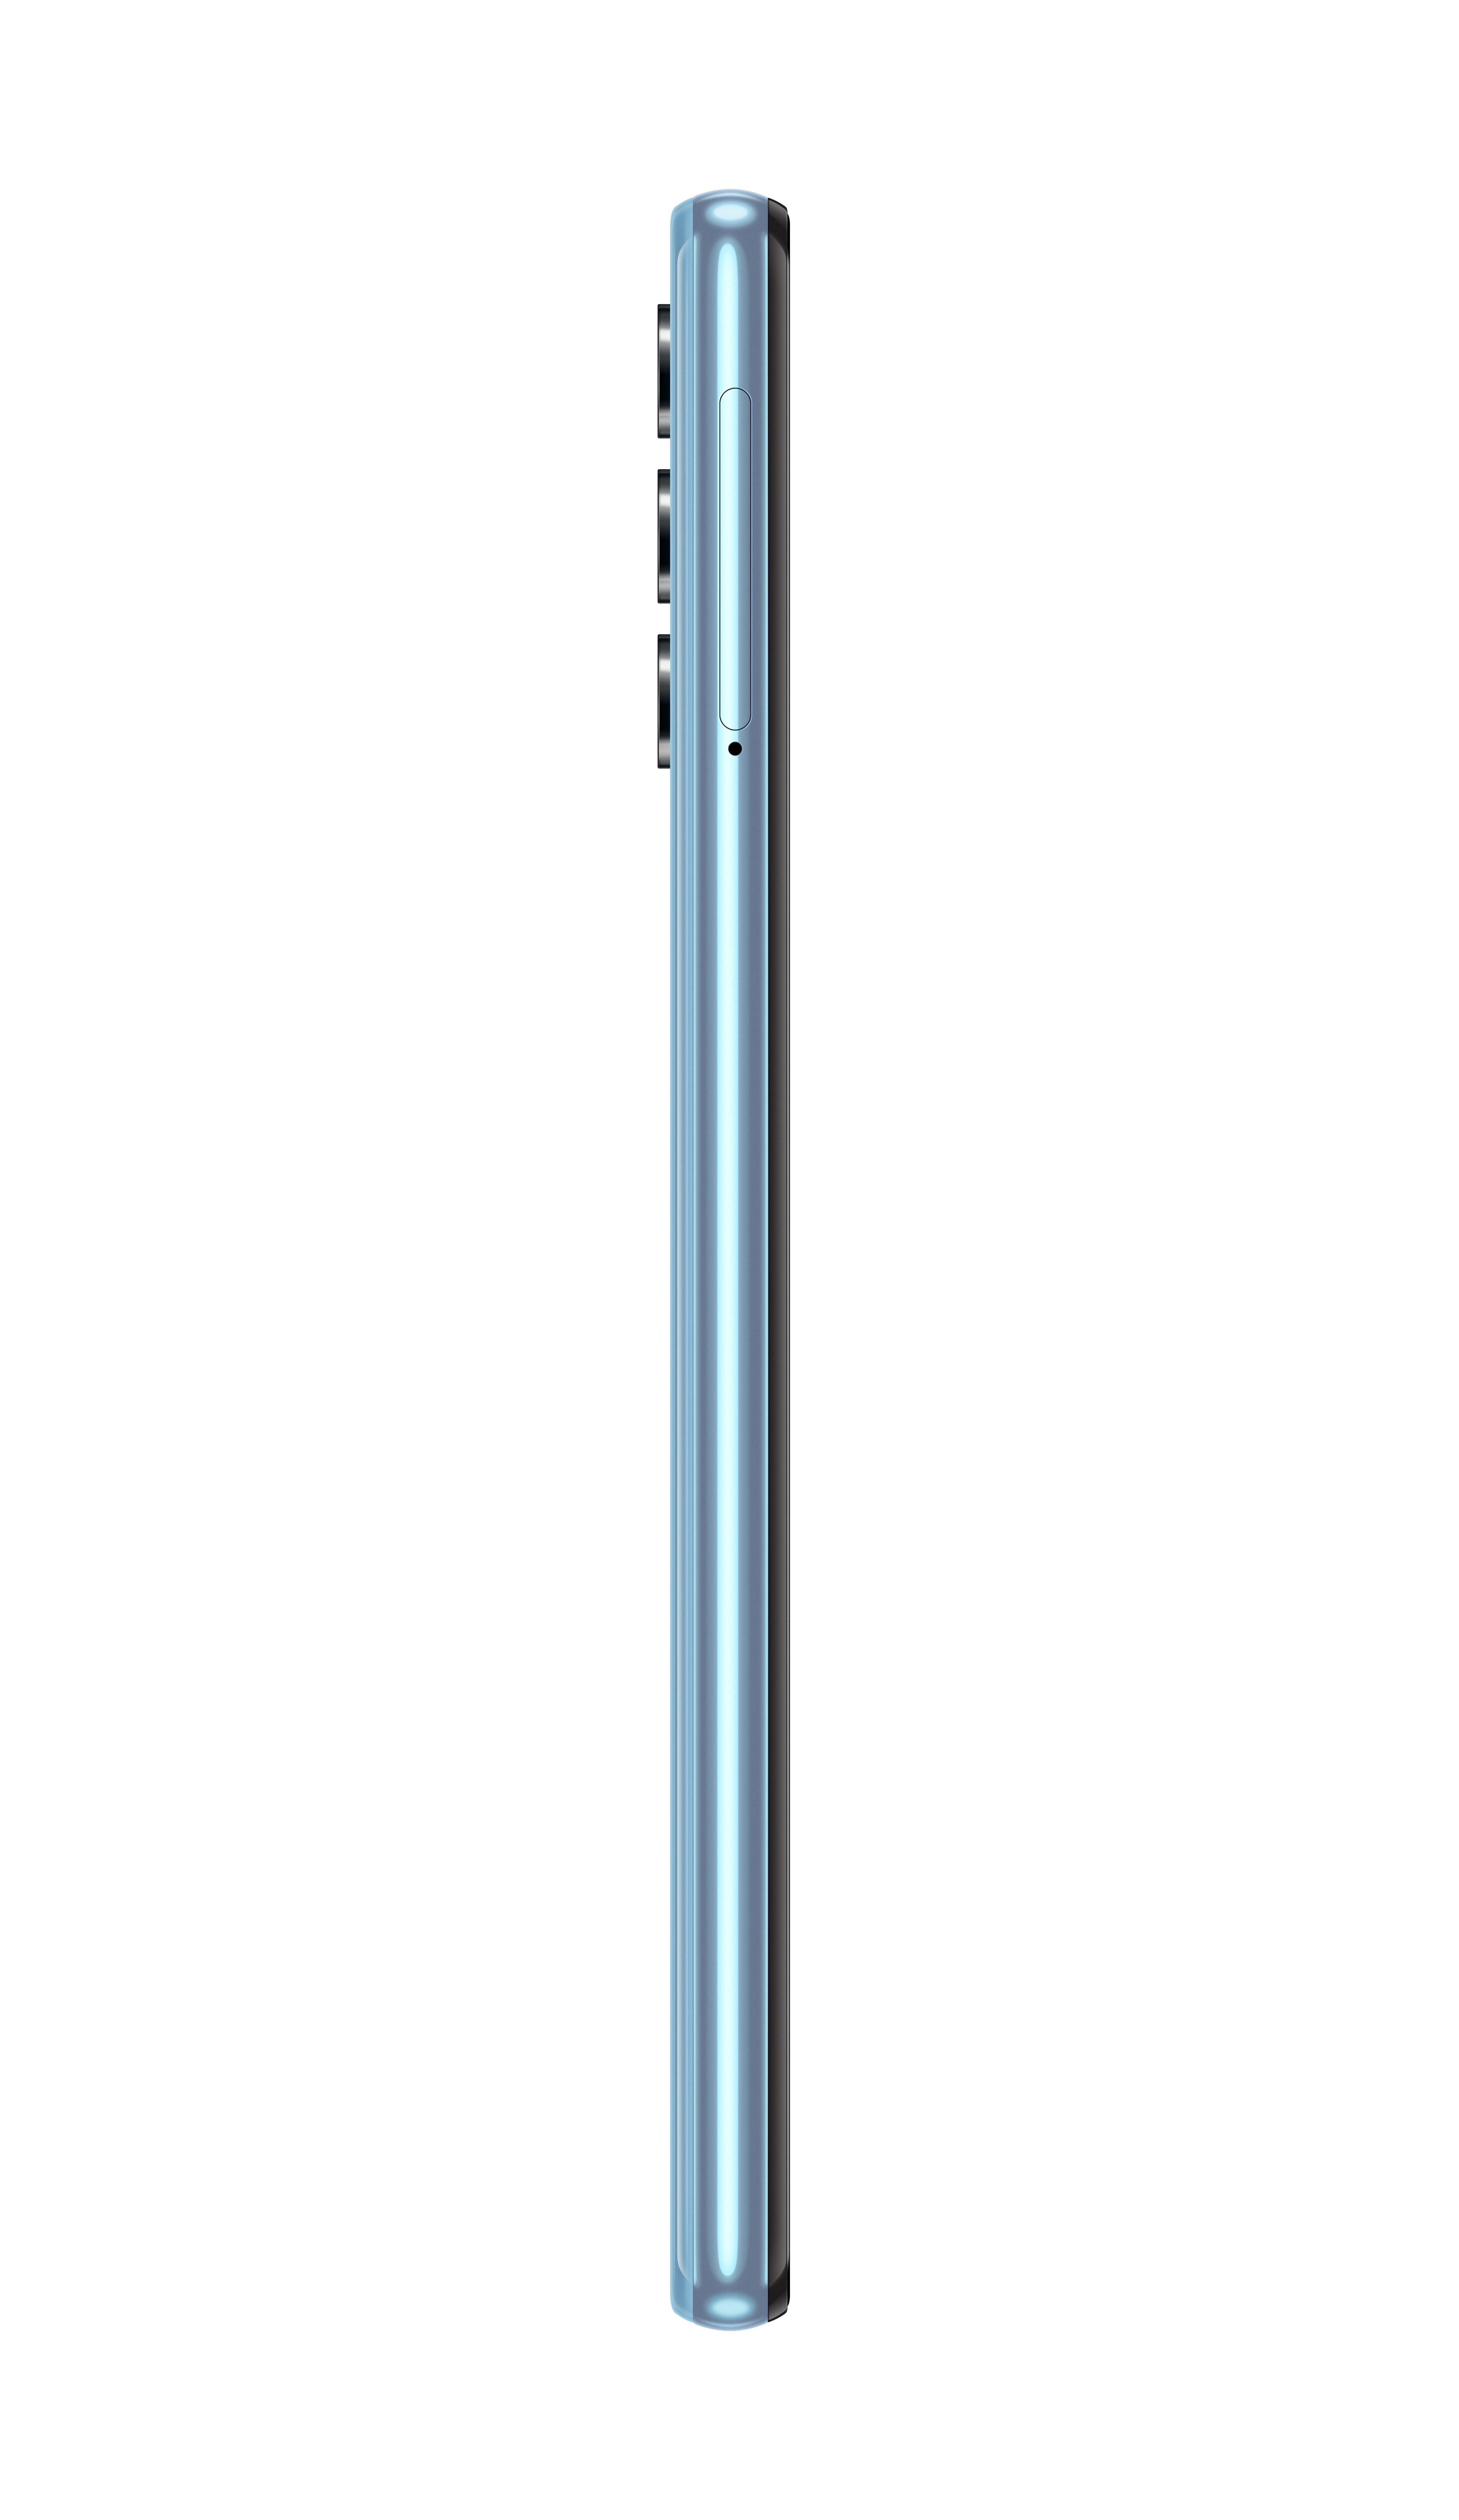 SAMSUNG GALAXY A32 Blau 64 SIM GB 5G Dual